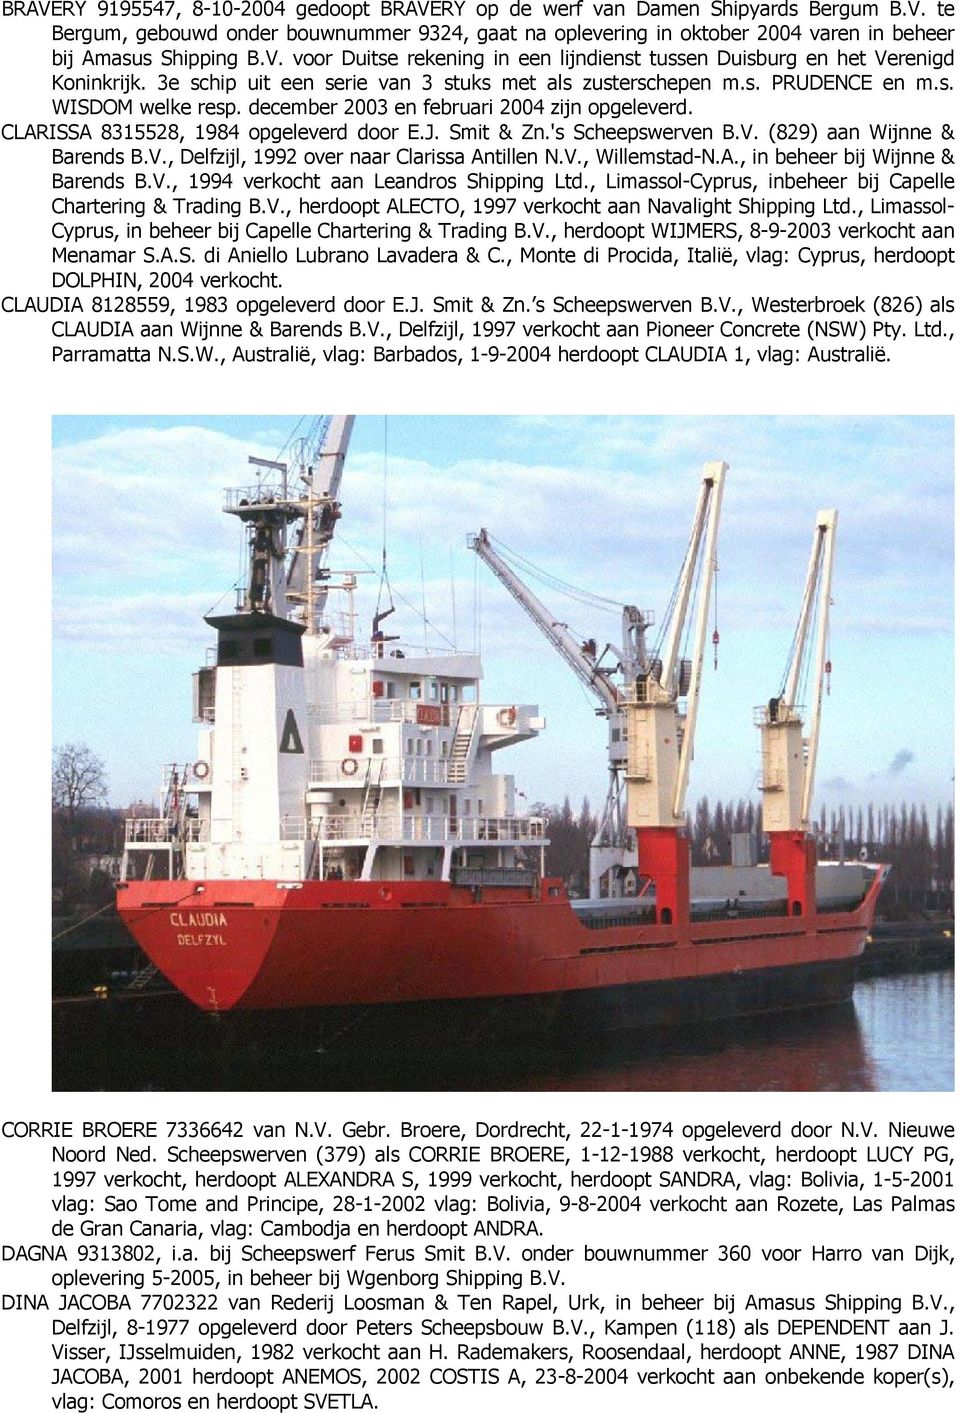 december 2003 en februari 2004 zijn opgeleverd. CLARISSA 8315528, 1984 opgeleverd door E.J. Smit & Zn.'s Scheepswerven B.V. (829) aan Wijnne & Barends B.V., Delfzijl, 1992 over naar Clarissa Antillen N.